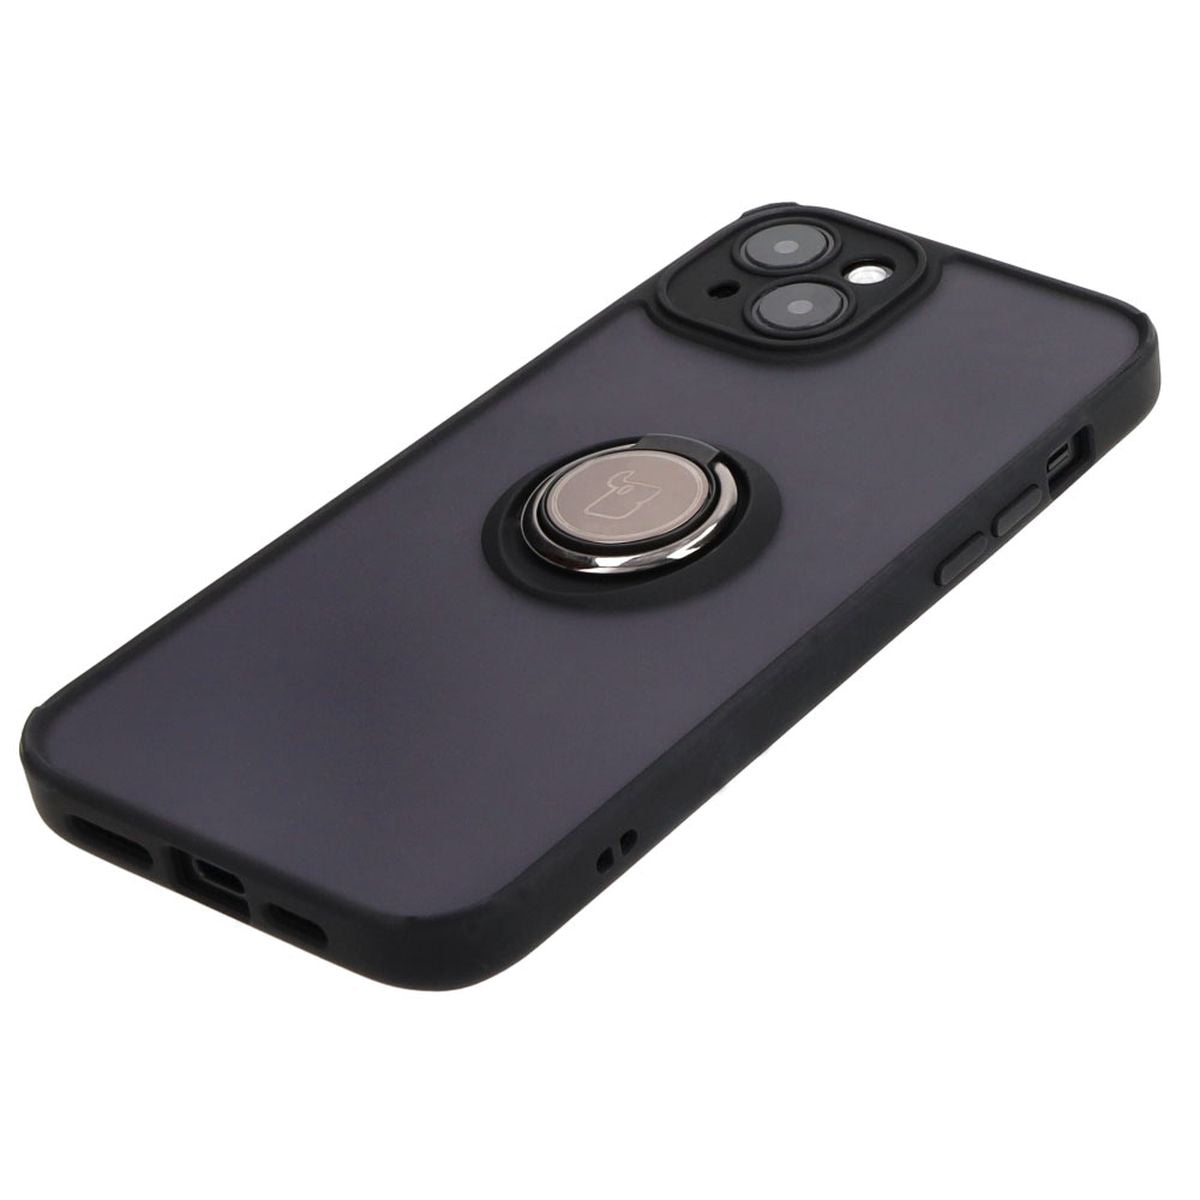 Handyhülle mit Fingergriff für iPhone 15 Plus, Bizon Case Hybrid Ring, getönt mit schwarzem Rahmen